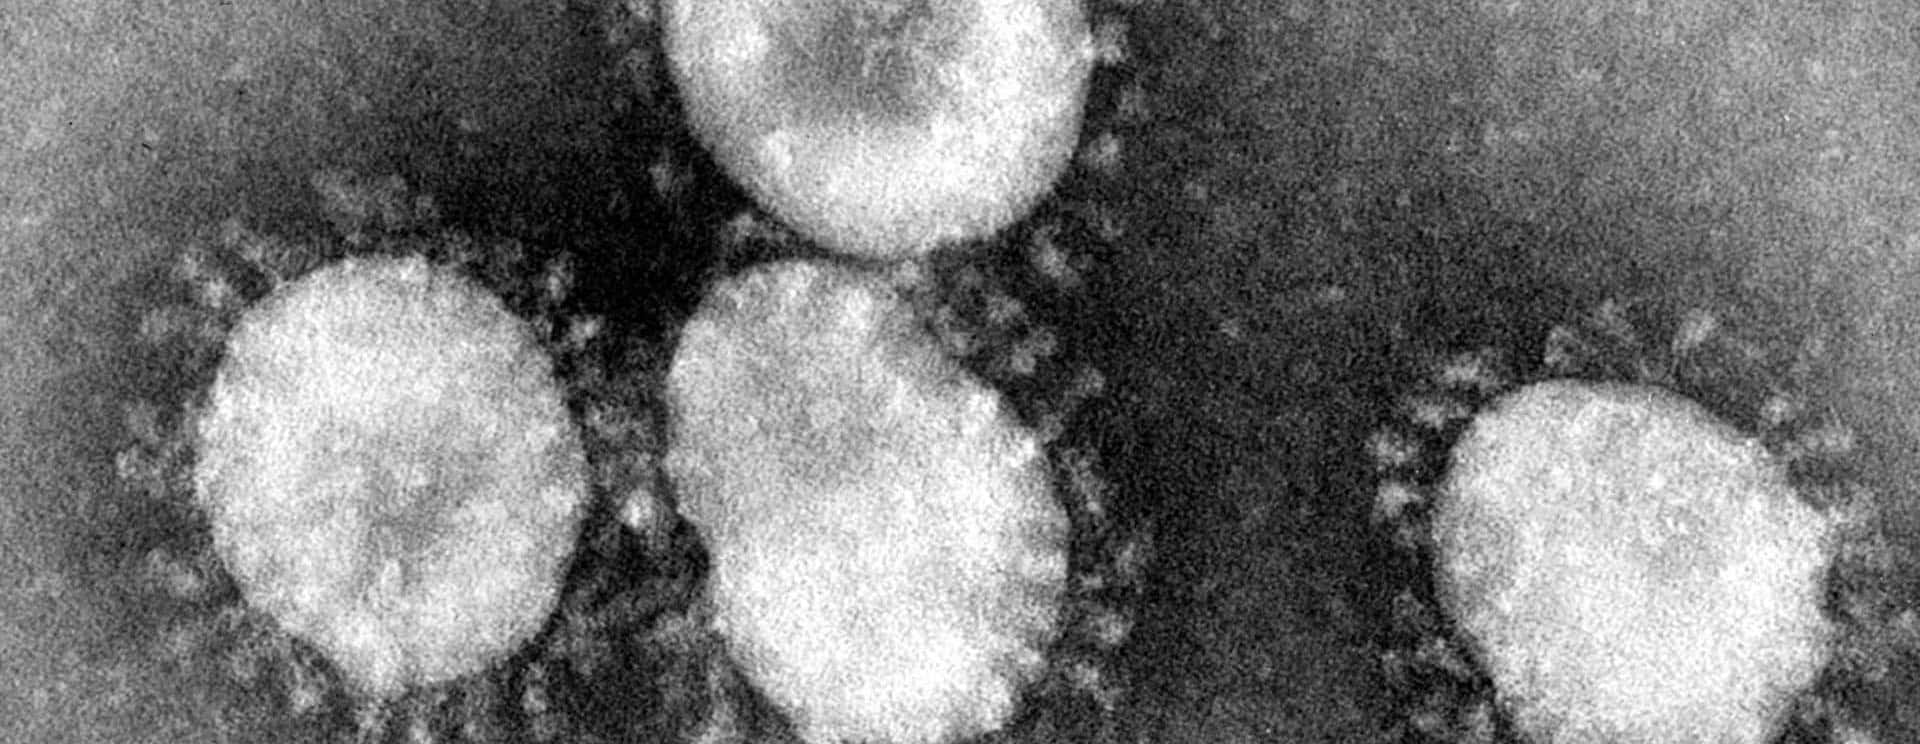 coronaviruses-jpg-5